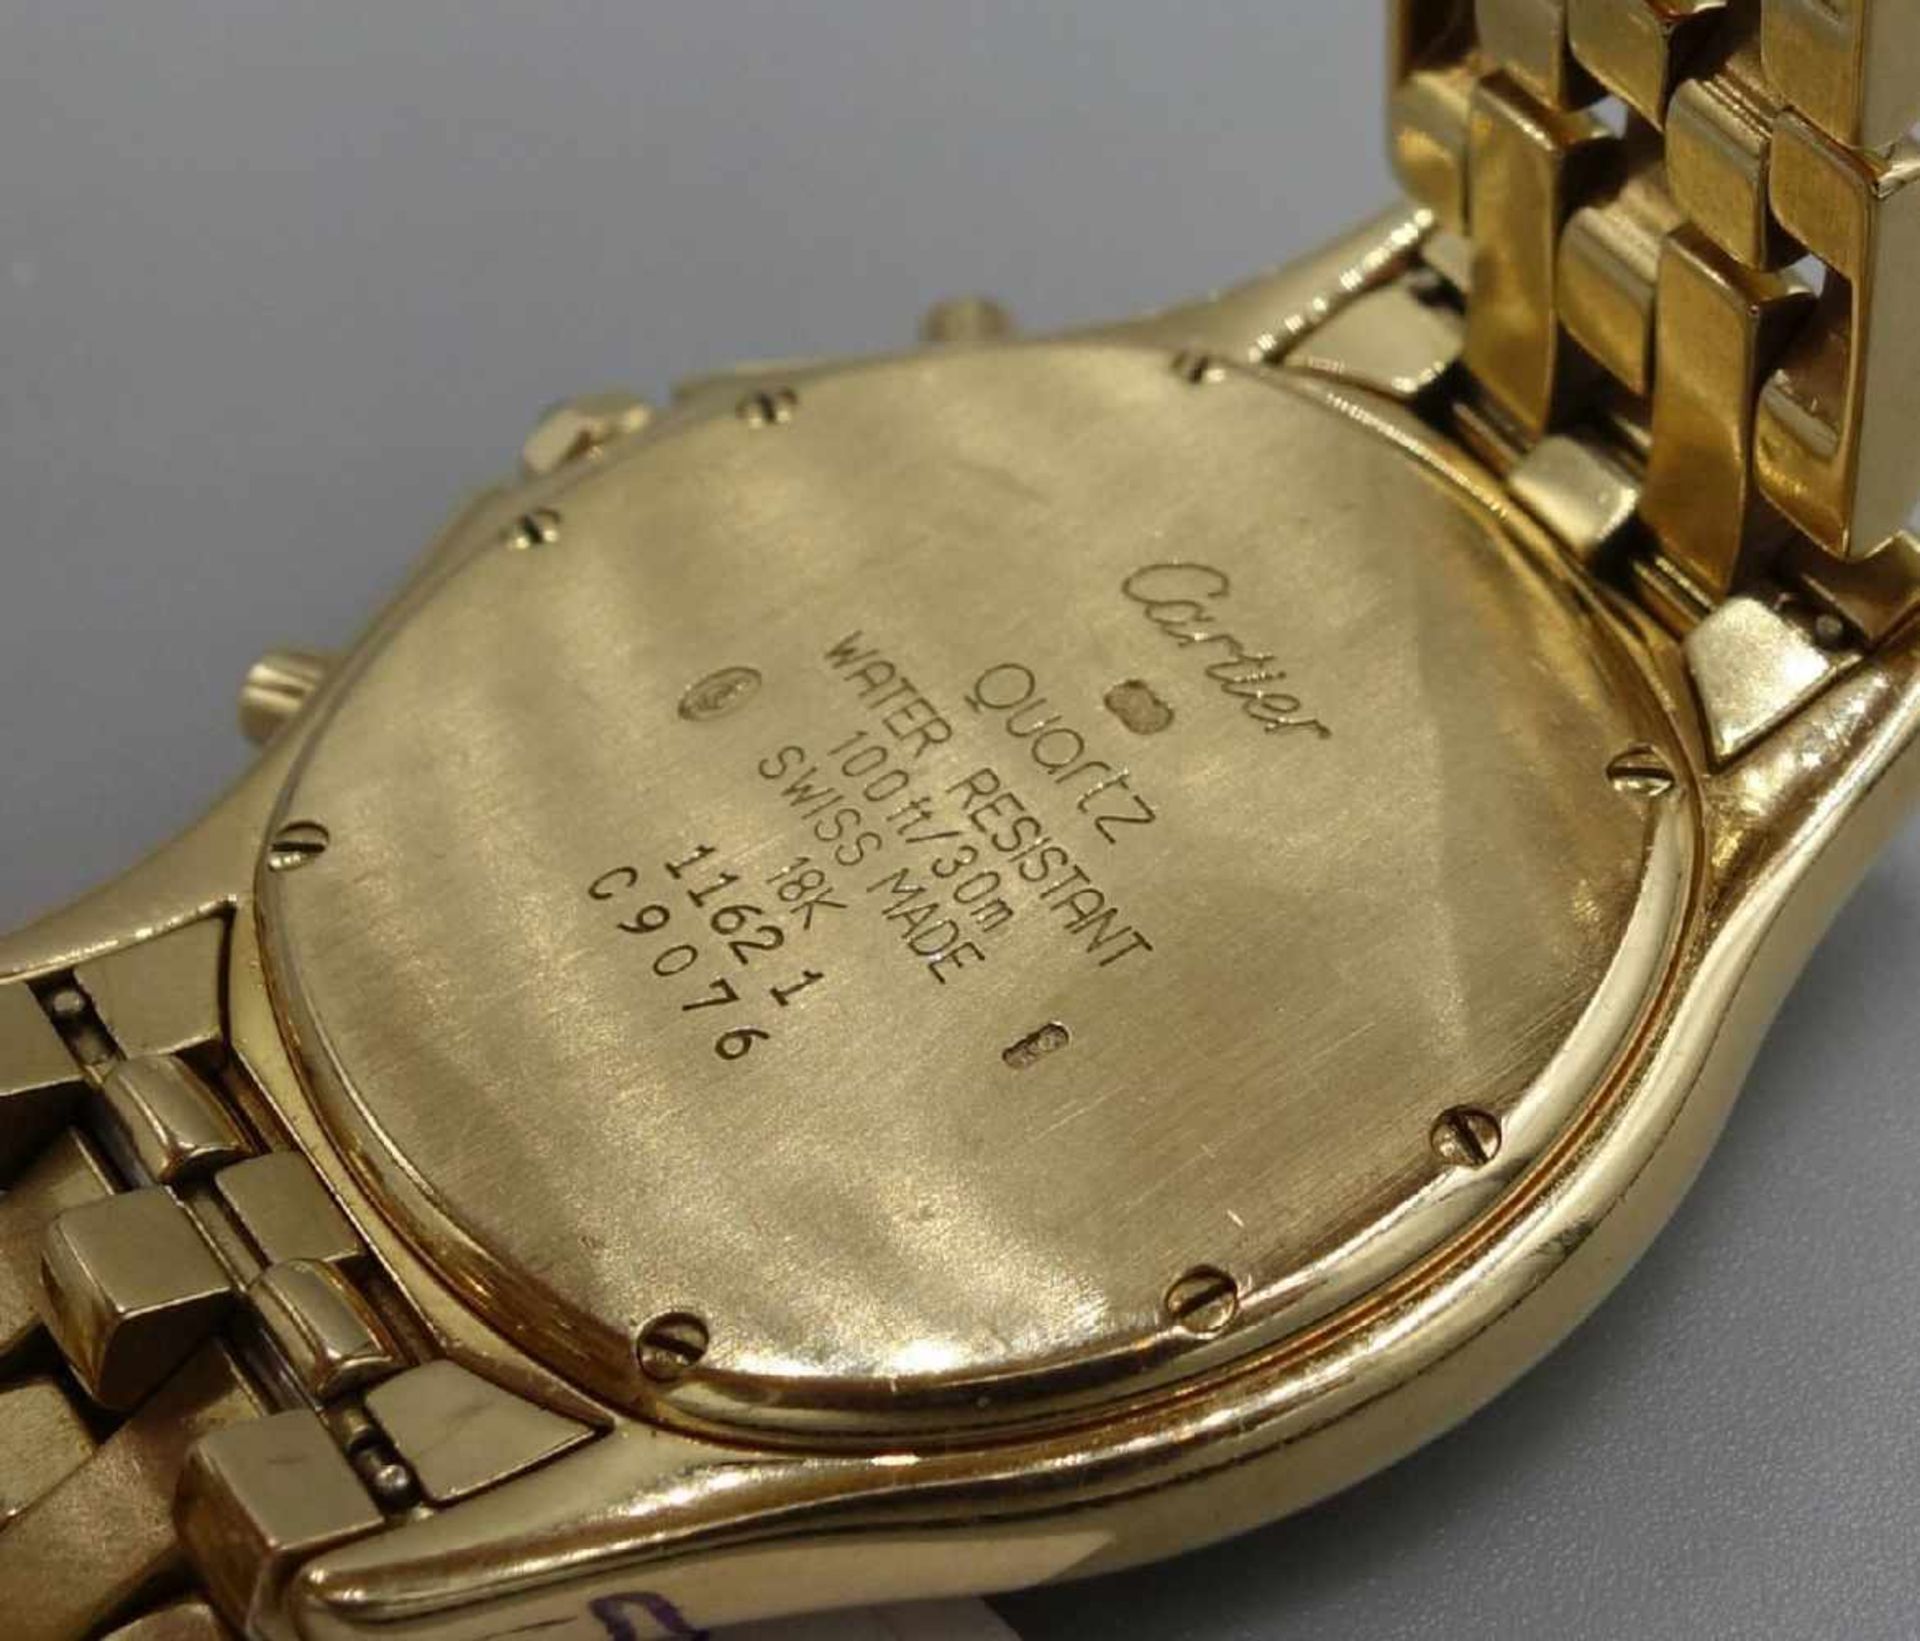 GOLDENE ARMBANDUHR / CHRONOGRAPH - CARTIER COUGAR / wristwatch, Quarz-Uhr, Manufaktur Cartier SA / - Bild 7 aus 7